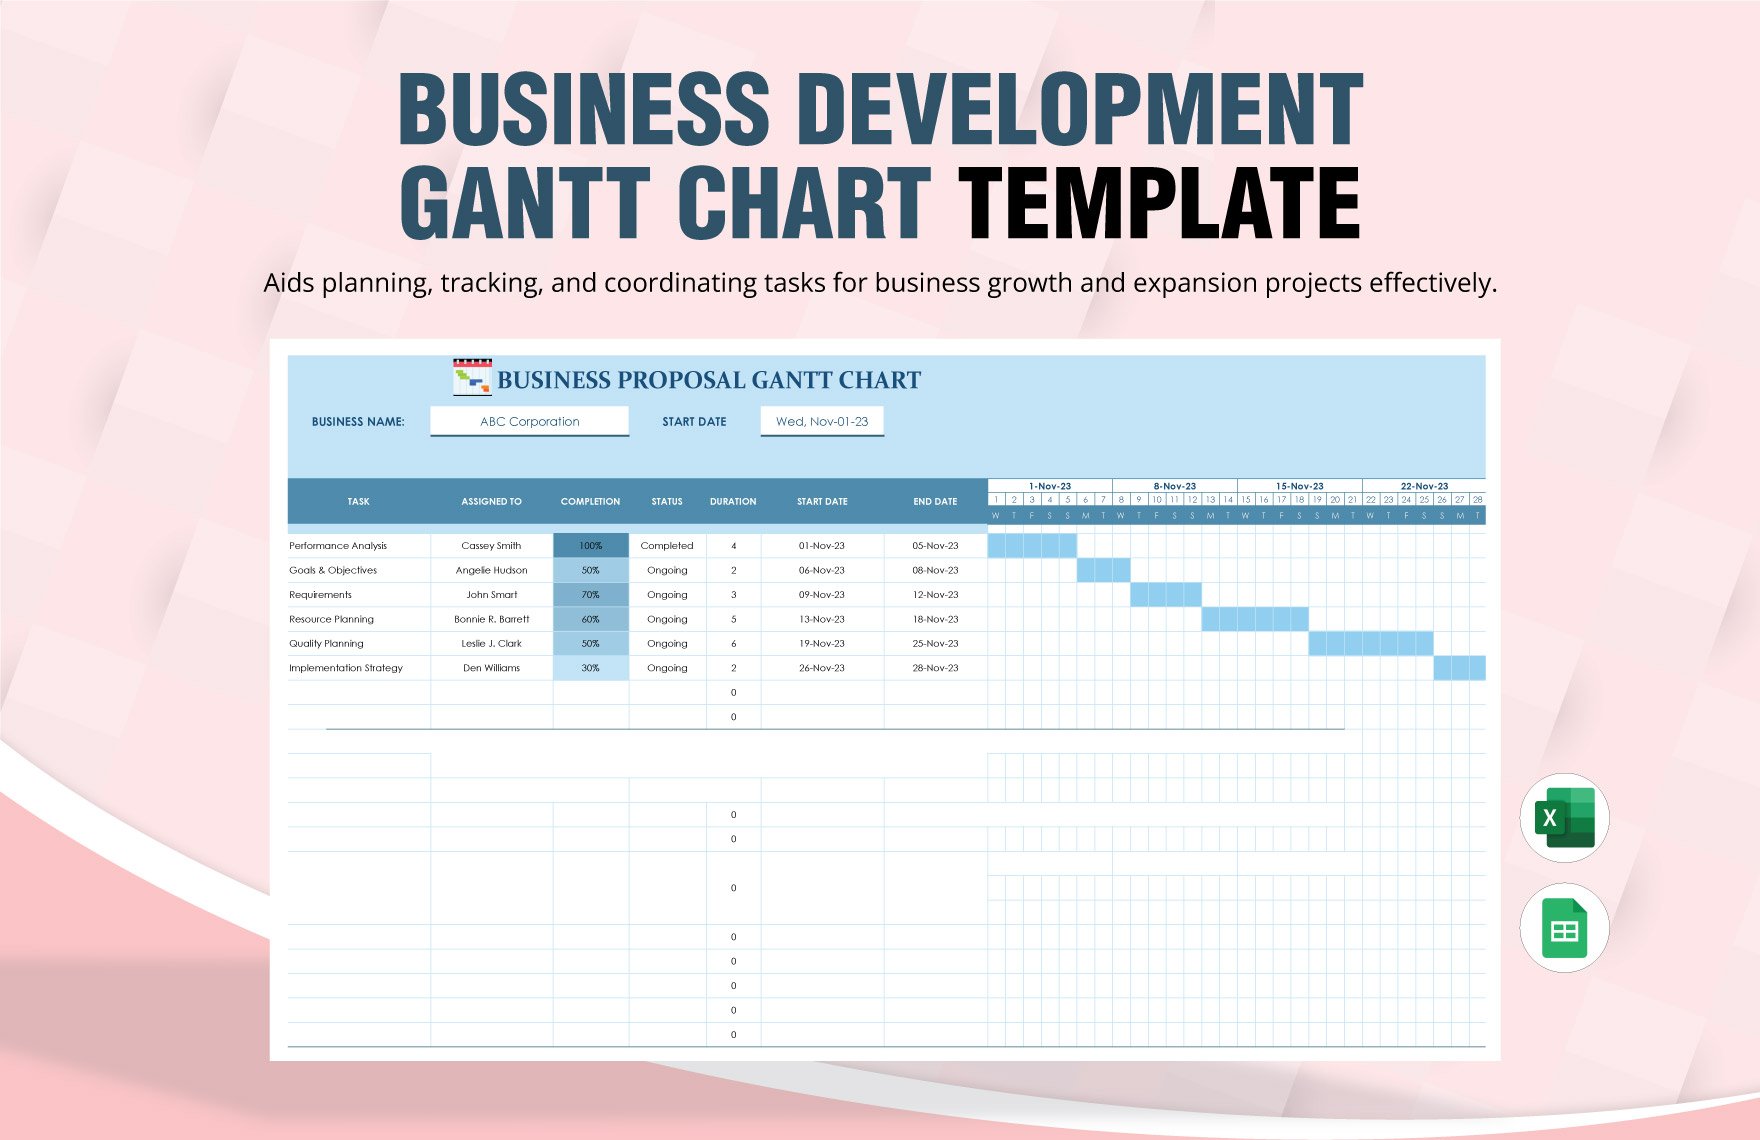 Business Development Gantt Chart Template in Excel, Google Sheets